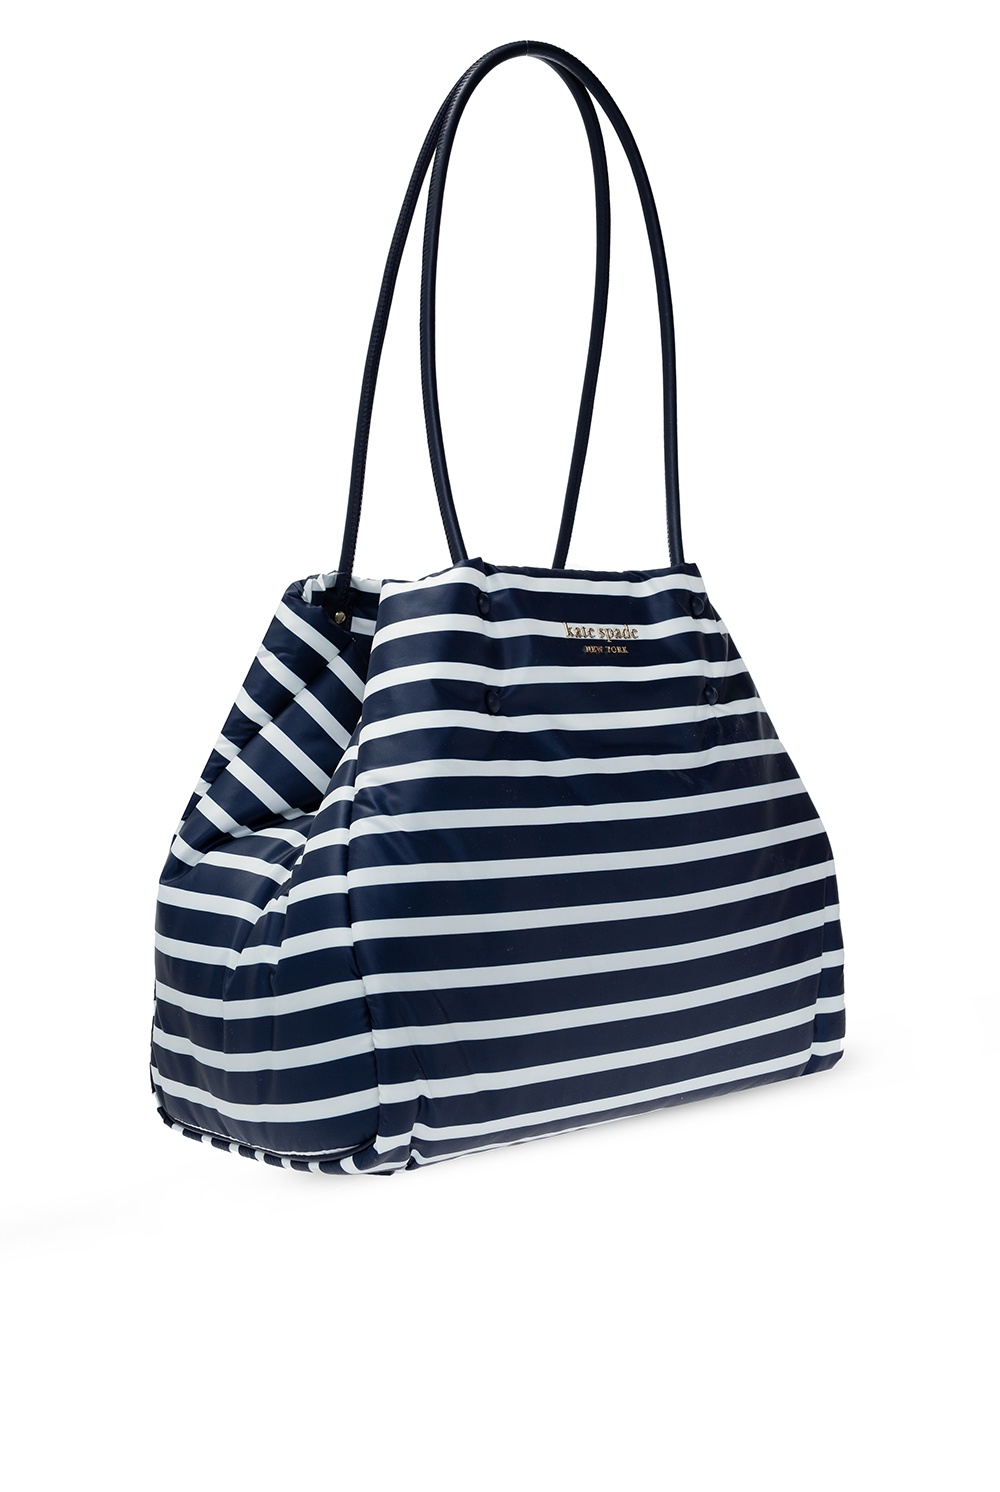 Kate Spade Striped tote bag | Women's Bags | Vitkac